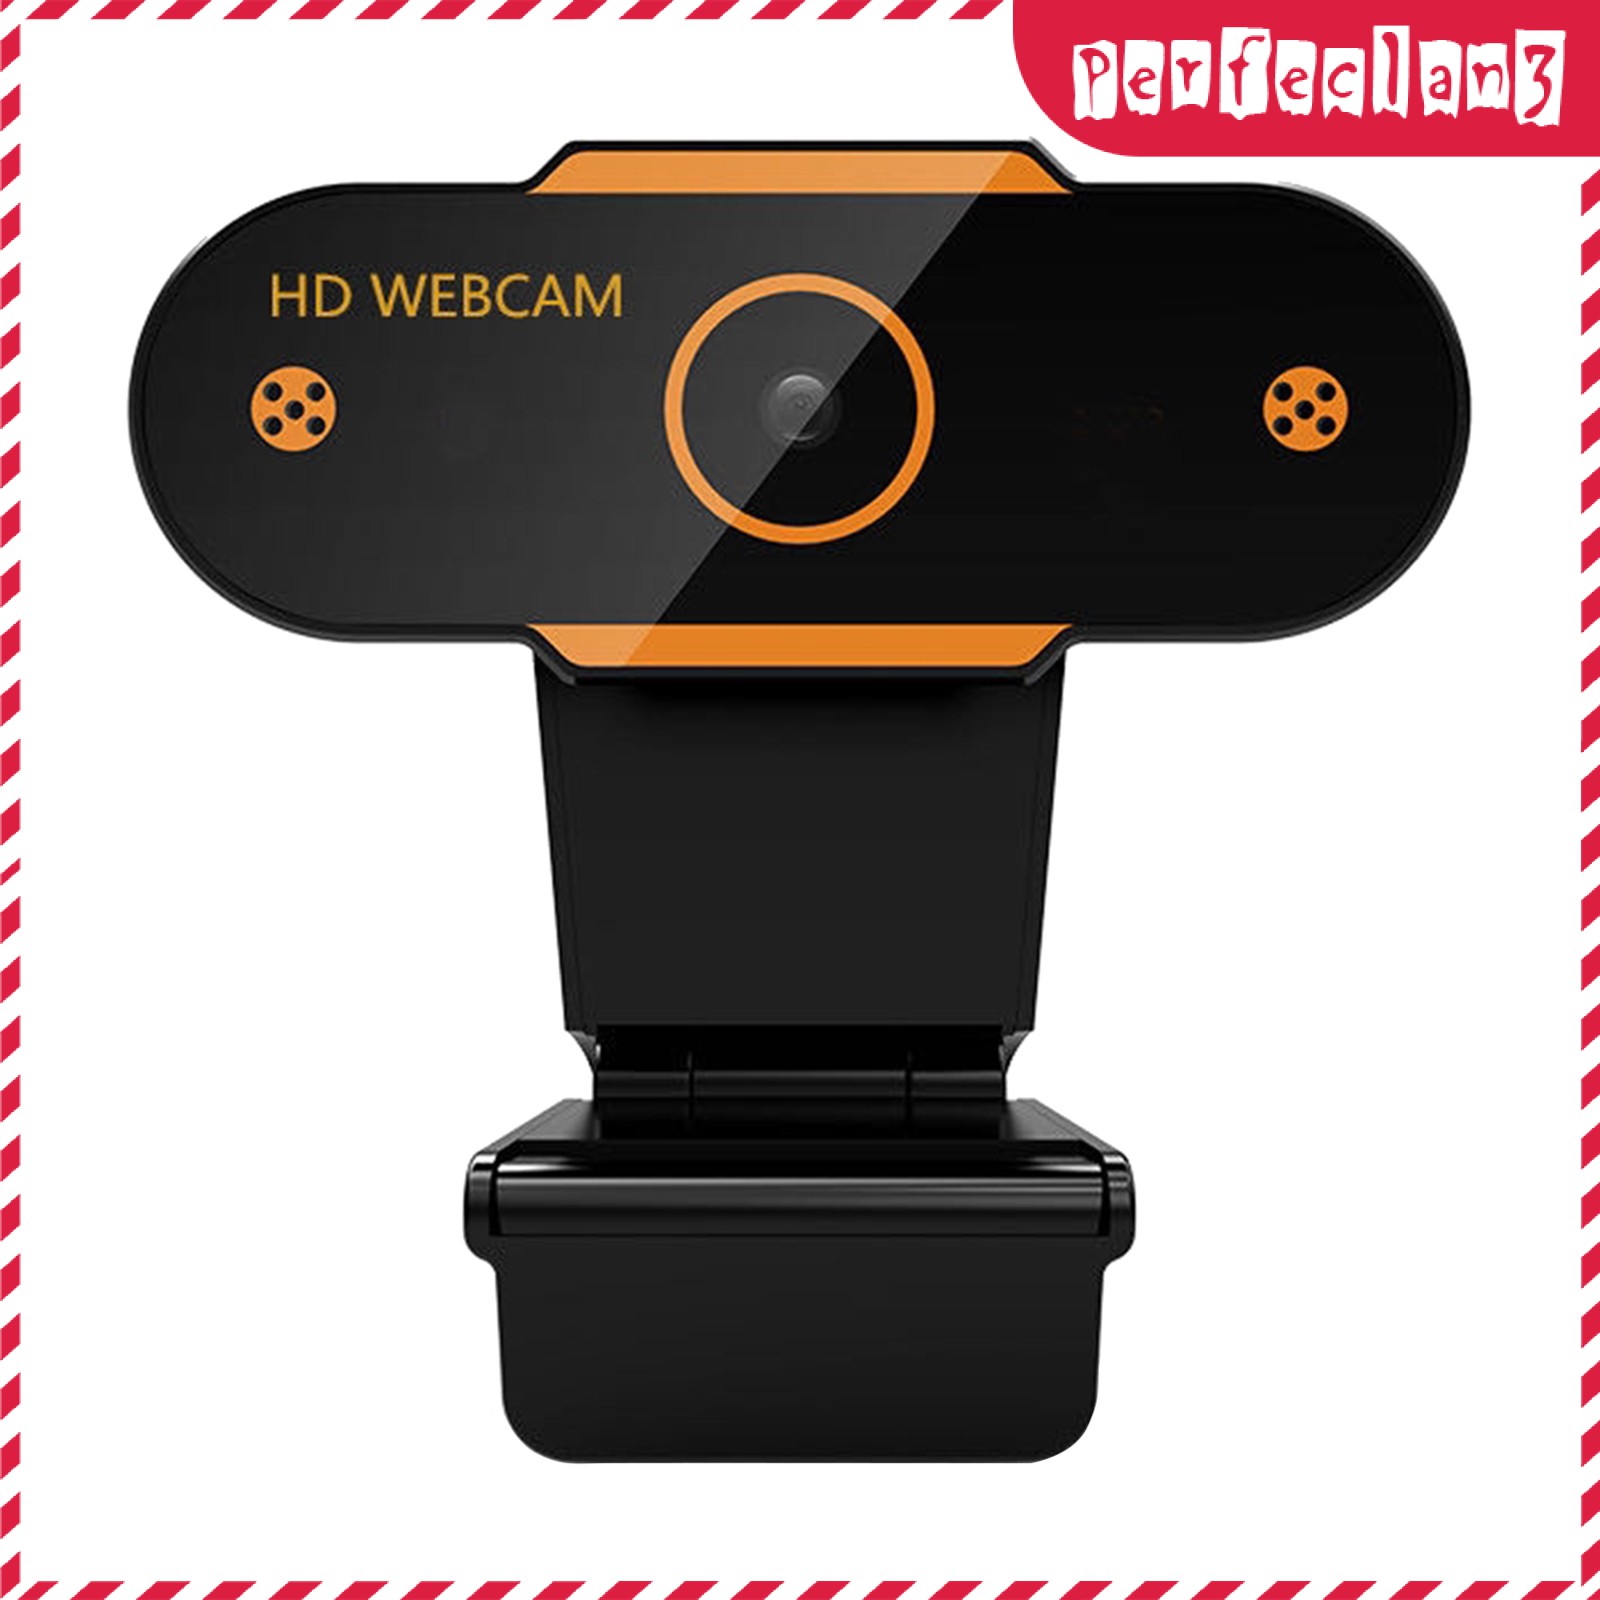 Webcam Lấy Nét Tự Động Hd Kèm Mic Cho Pc 480p